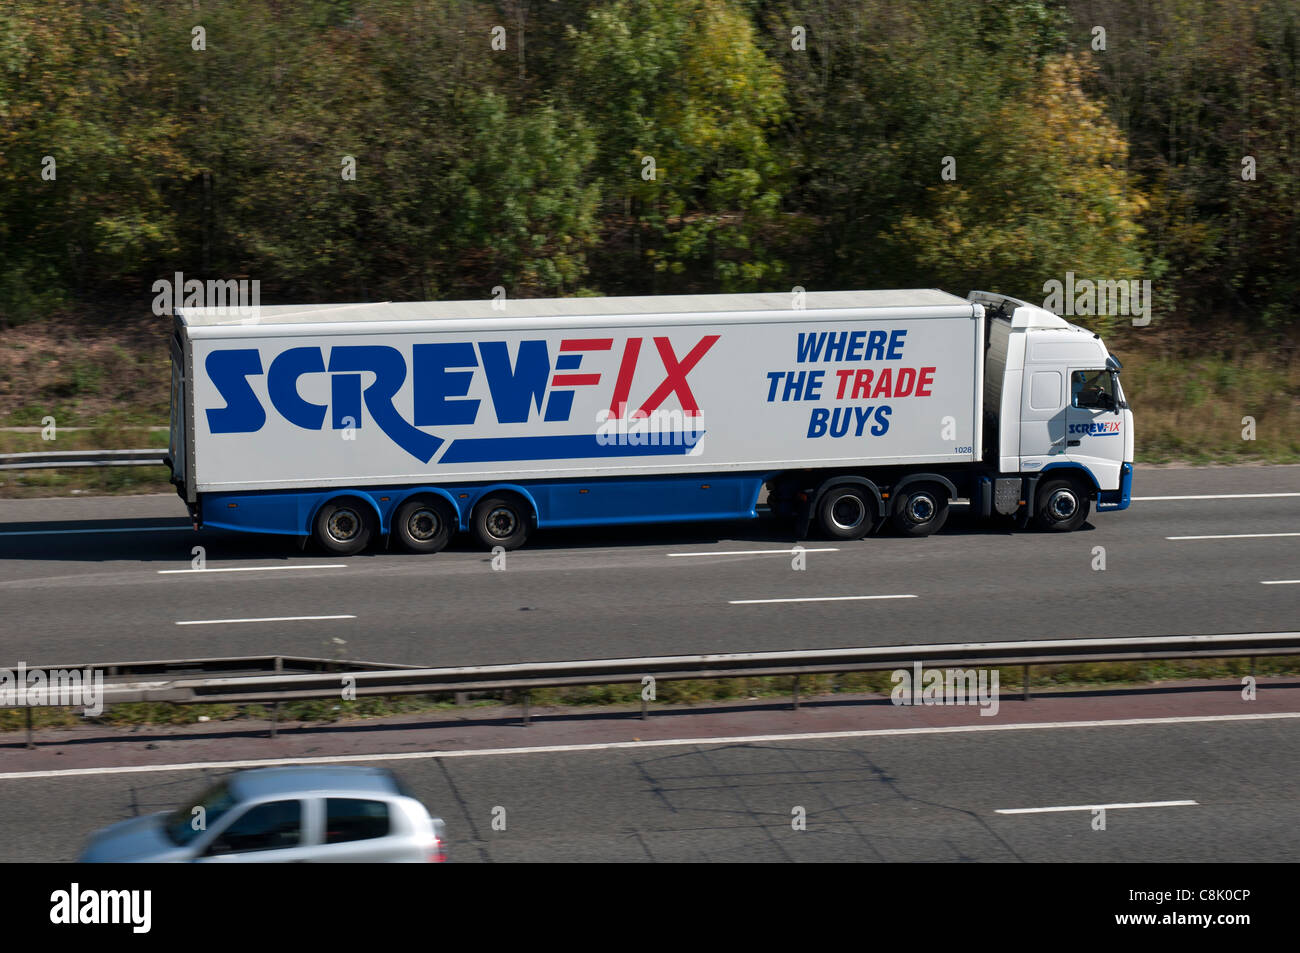 Screwfix lorry on M40 motorway, Warwickshire, UK Stock Photo